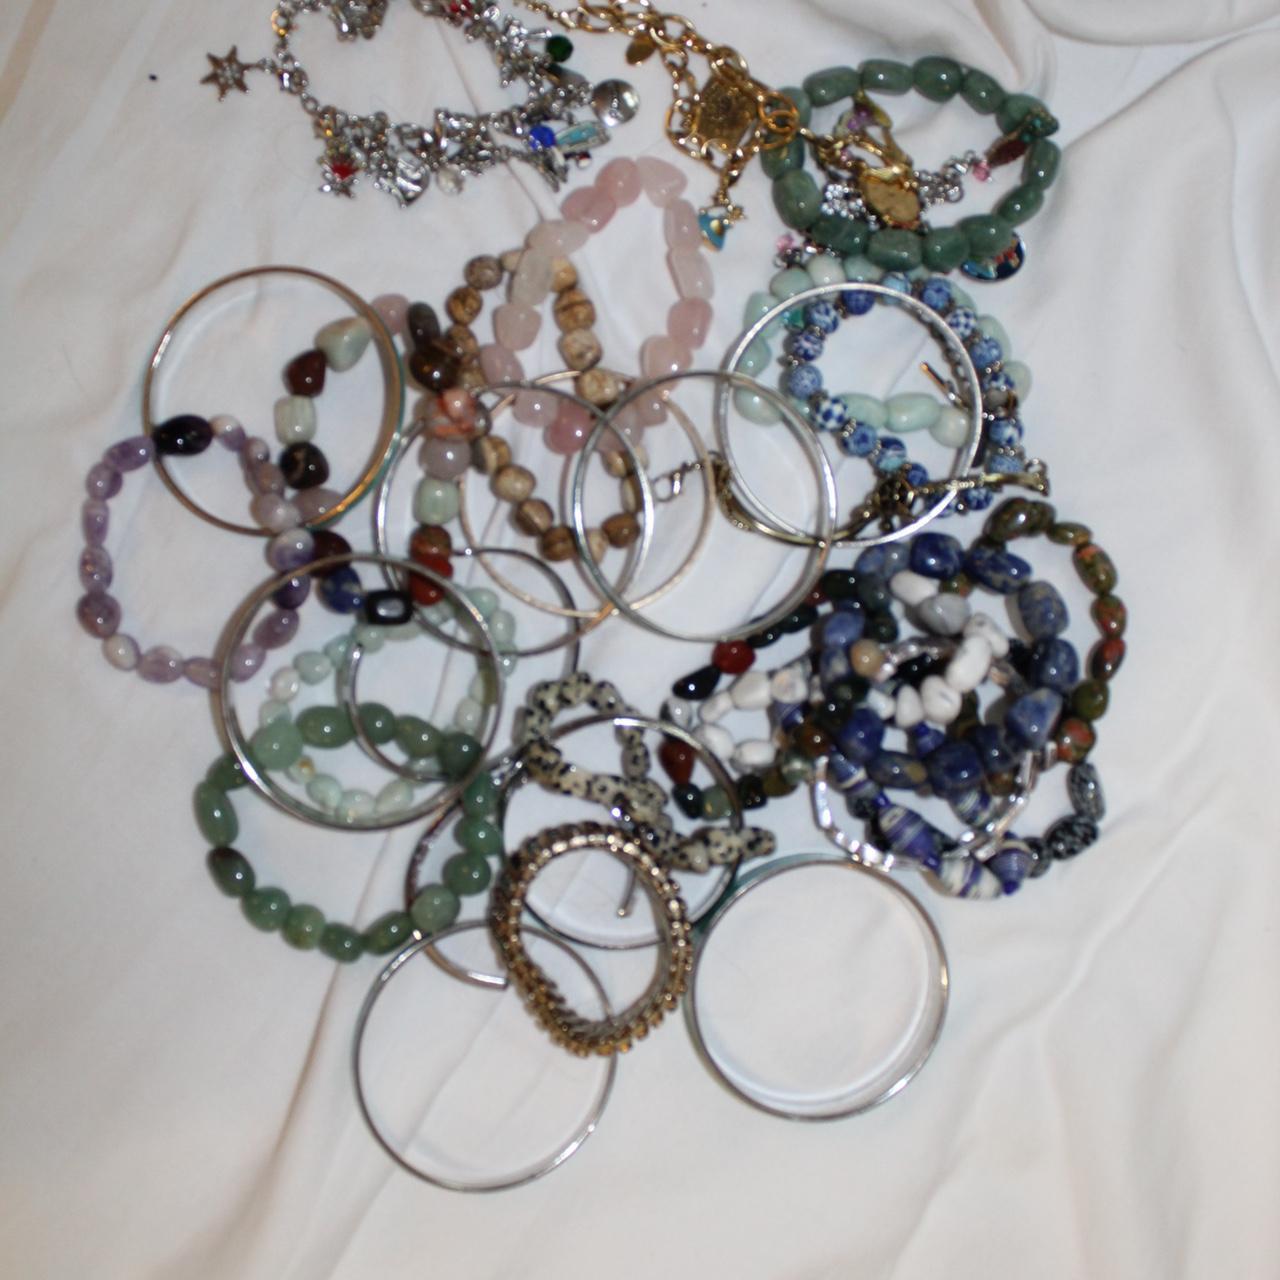 Assorted bracelets - Some charm bracelets - Some... - Depop